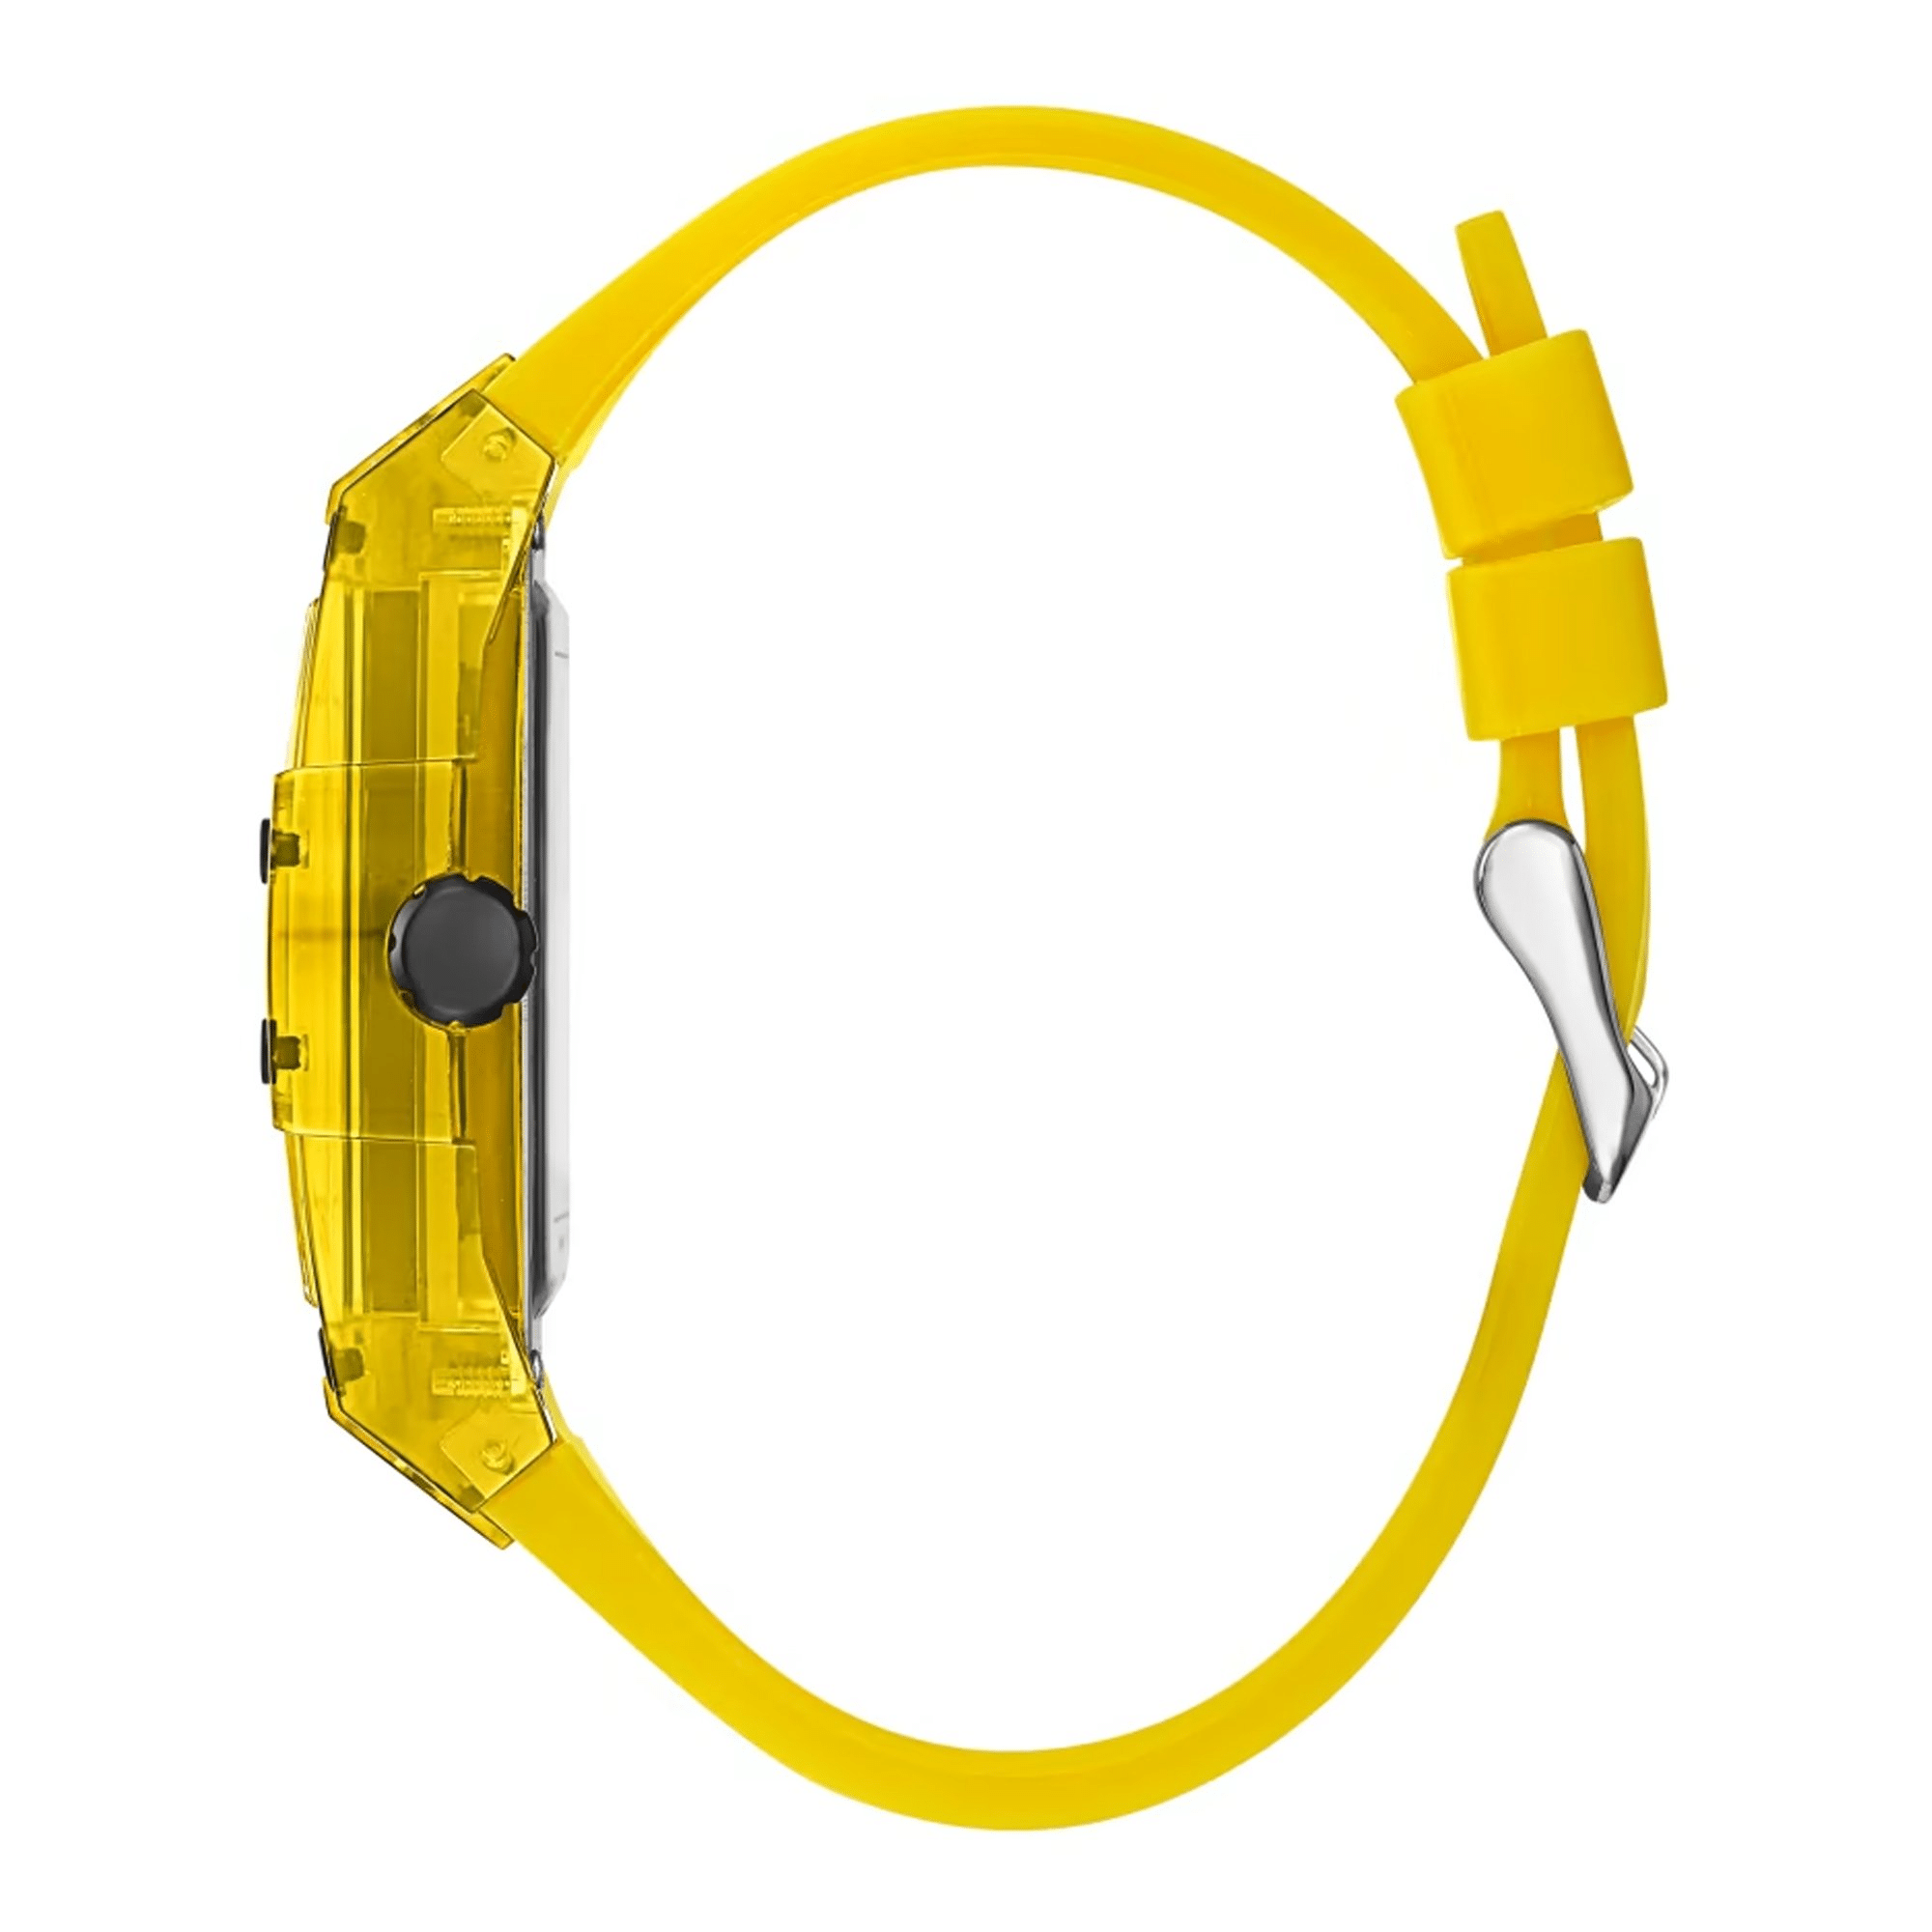 Guess Phoenix Yellow Silicon Moda Rectangular GW0203G6 reloj cuadrado  casual deportivo para hombre - TIME Guatemala